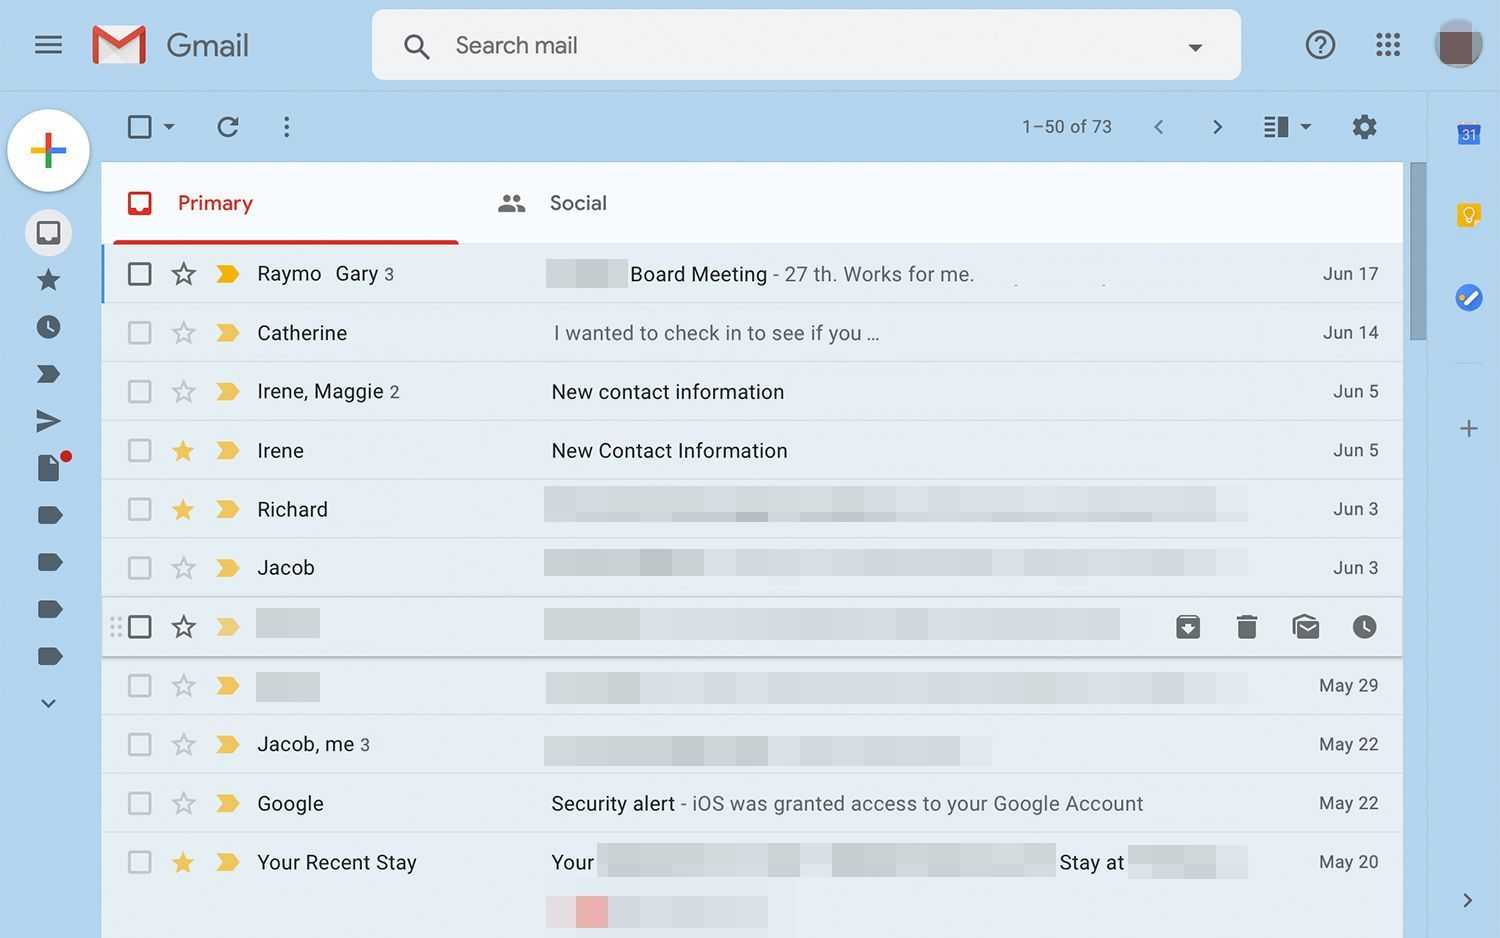 Удаление всех писем в почте gmail и очистка корзины почты | softlakecity.ru